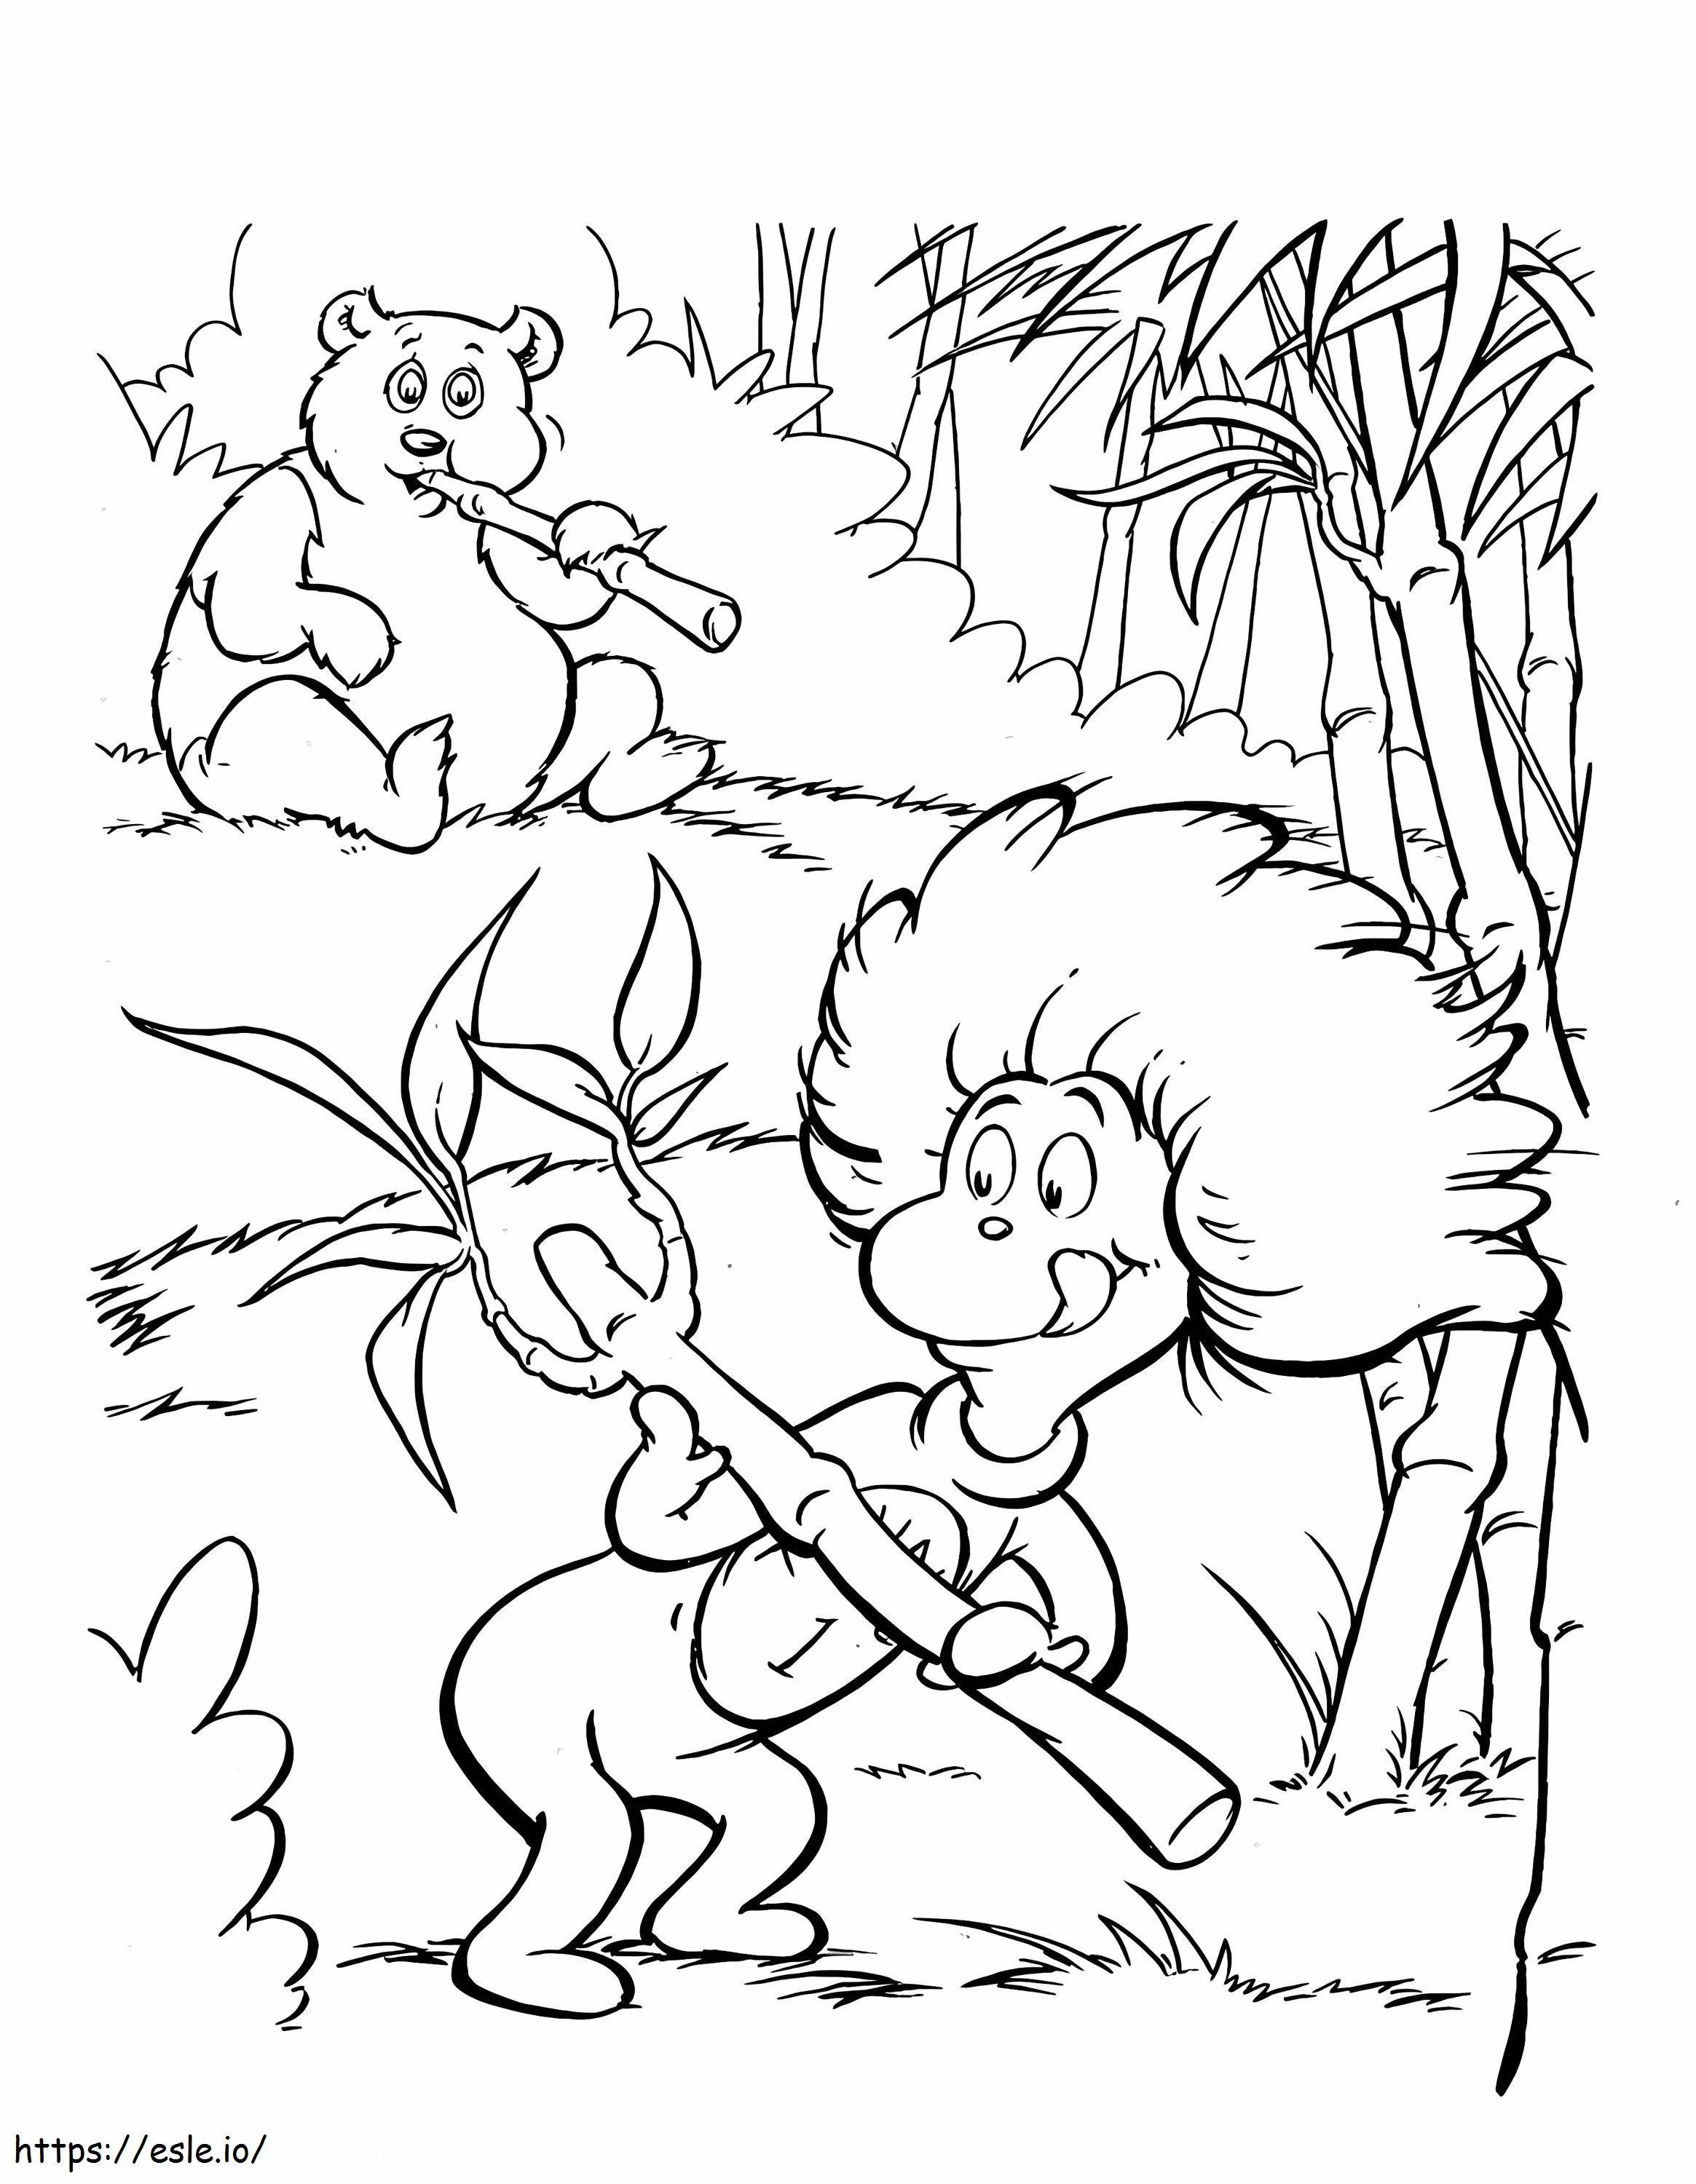 _Staggering Dr. Seuss Malvorlagen Seiten zum Ausdrucken Katze im Hut Getcoloringpages Pdf Free Printables Kindergarten Charaktere Foot Book Page There S Wocket My Pocket ausmalbilder